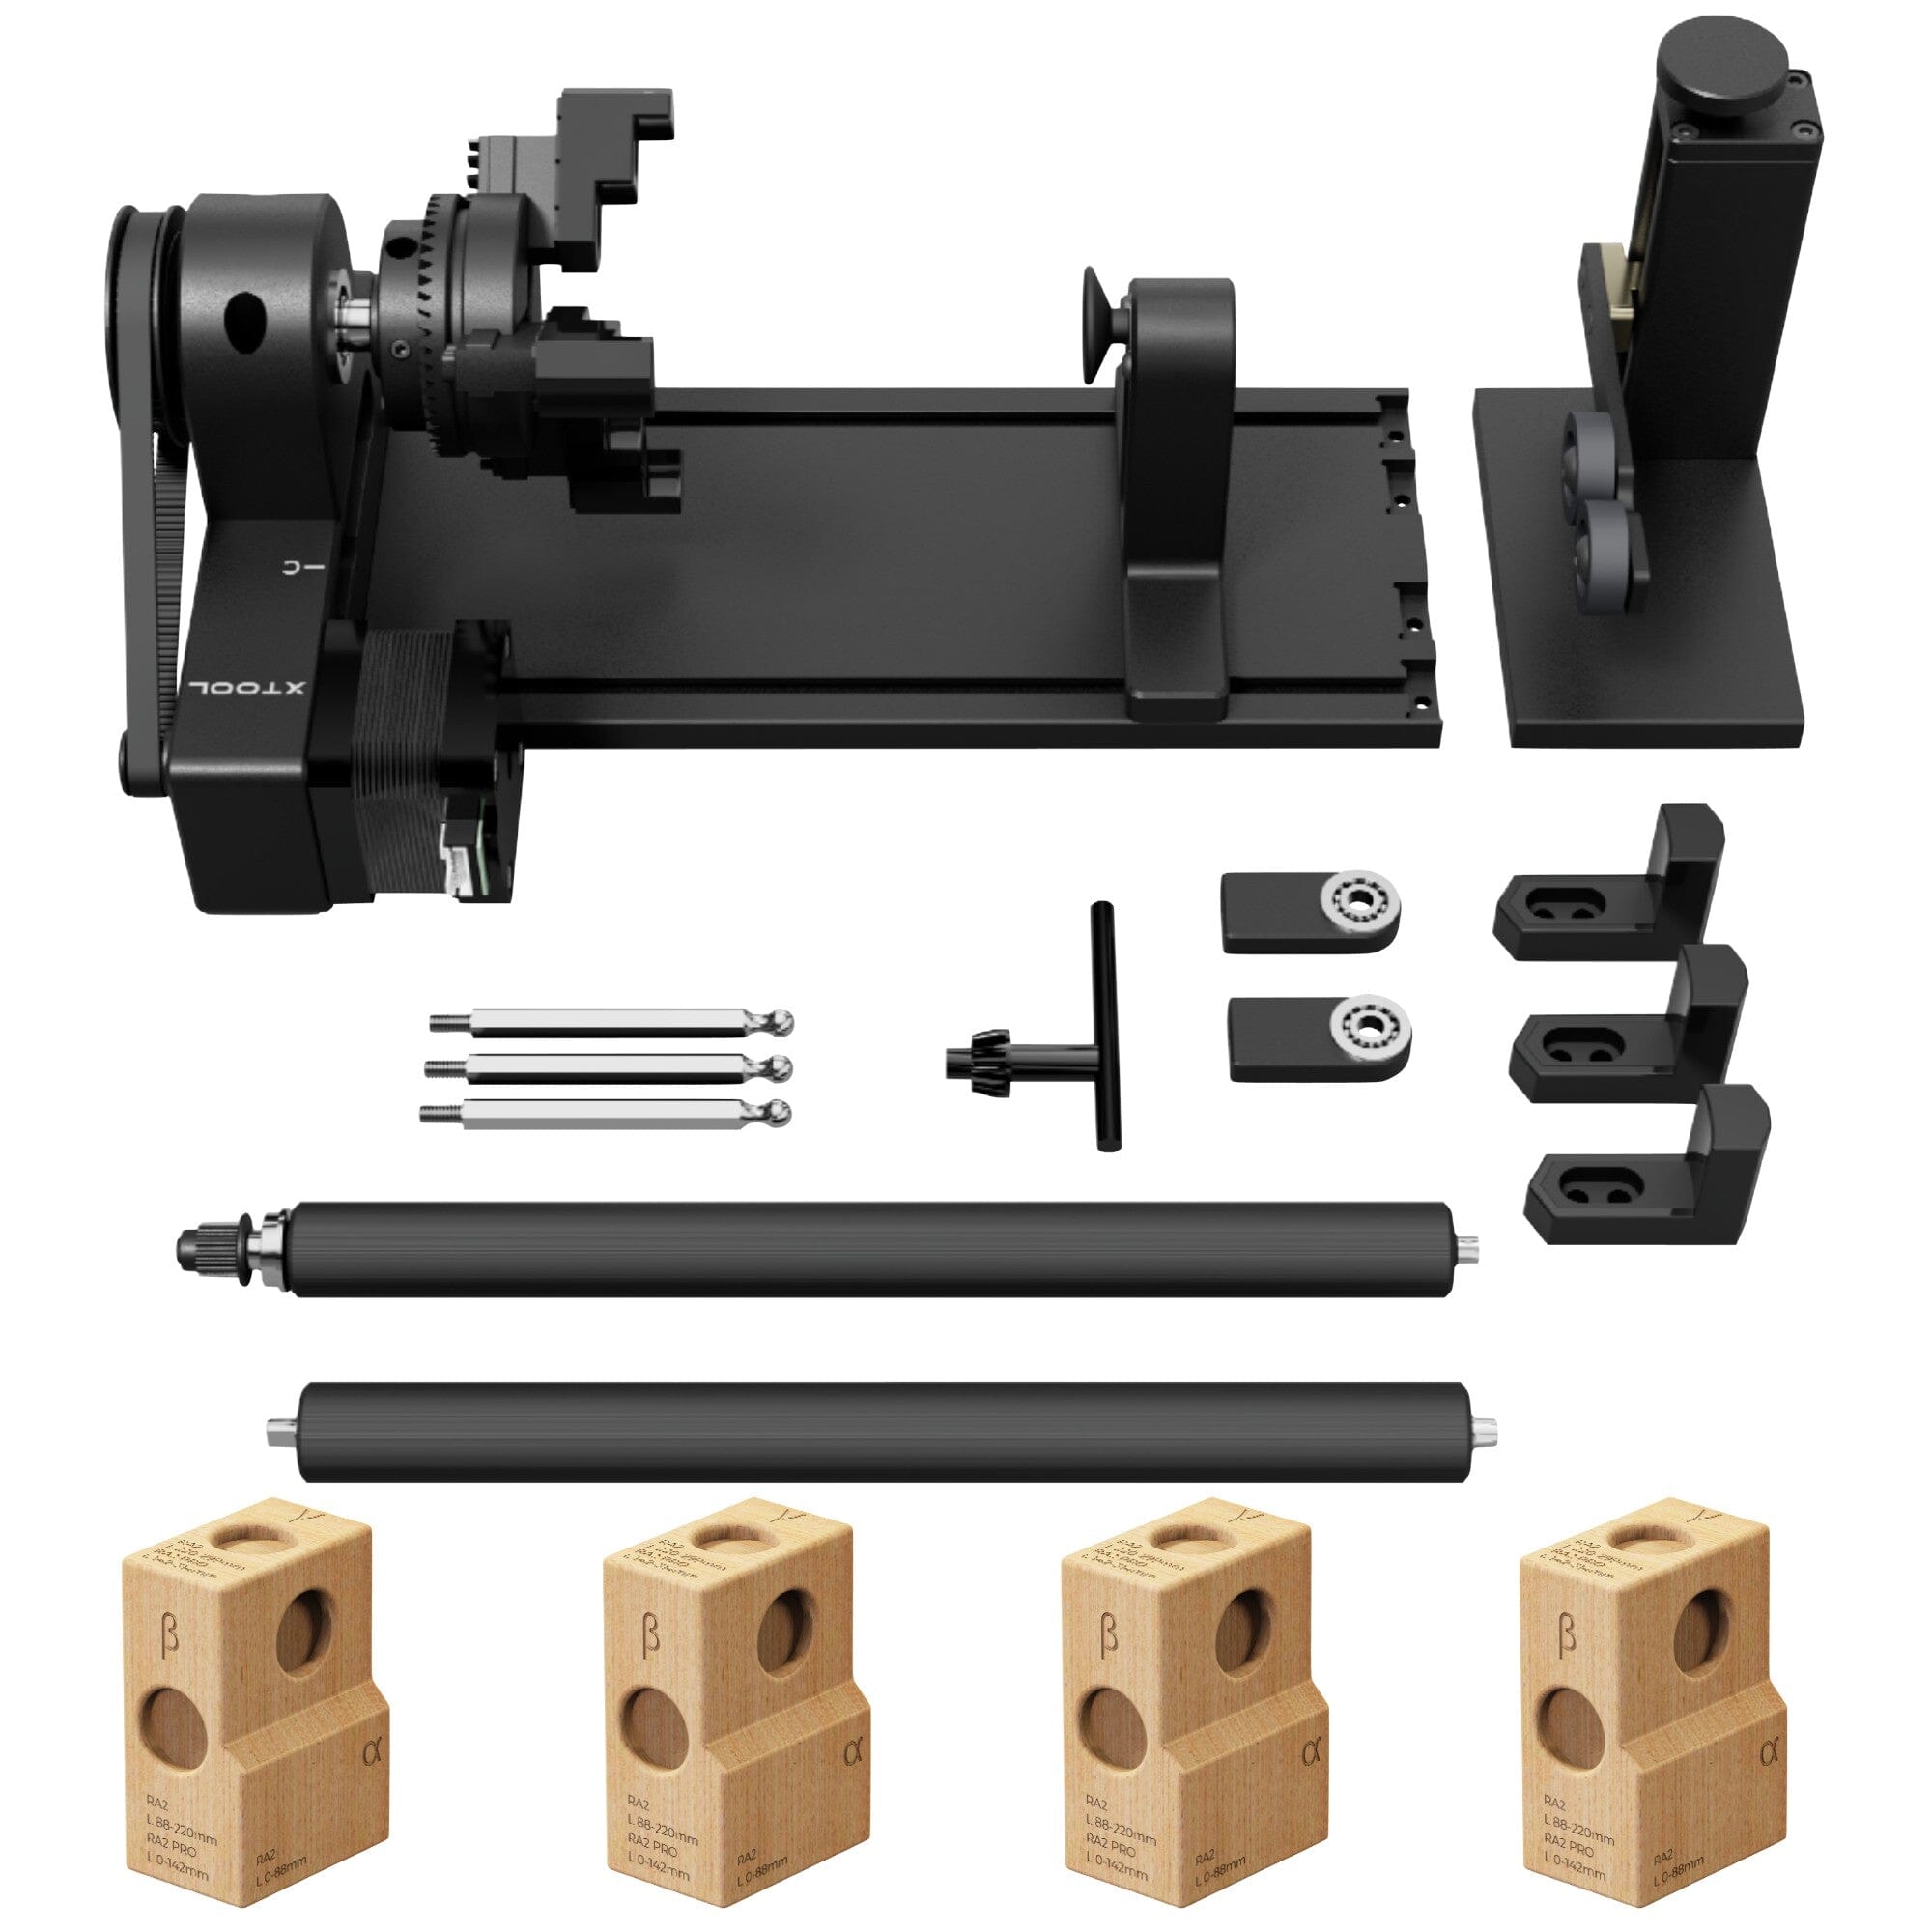 XTOOL M1 Laser Cutting & Engraving System